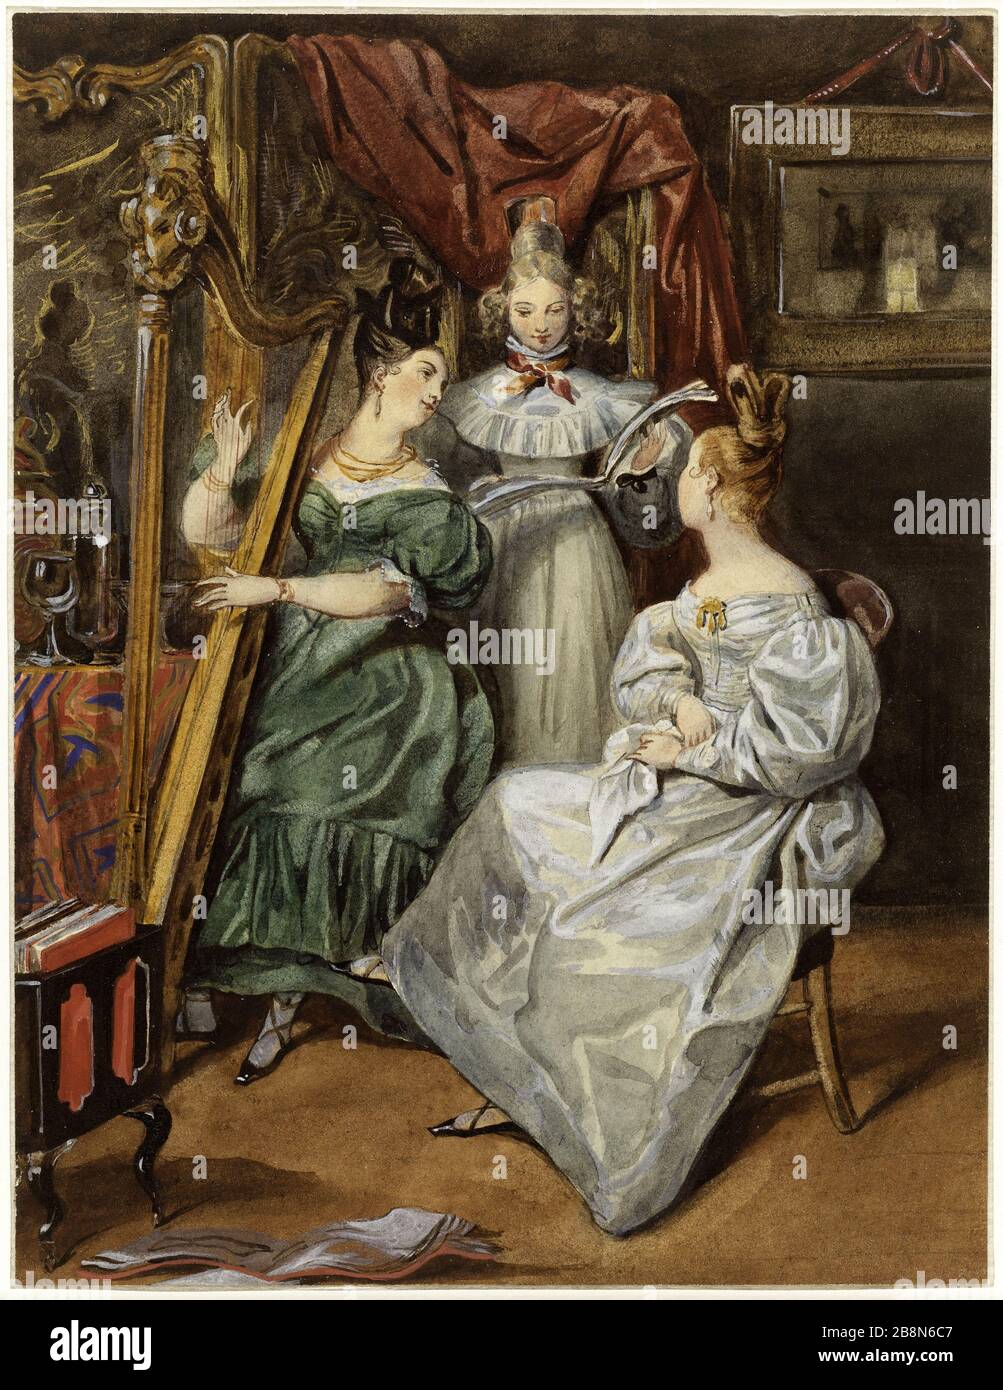 IL CONCERTO Eugne Devria (1805-1865). 'Le Concert'. Crayon, aquarelle et rehauts d'Or sur papier, 1832. Parigi, musa de la vie romanticique. Foto Stock